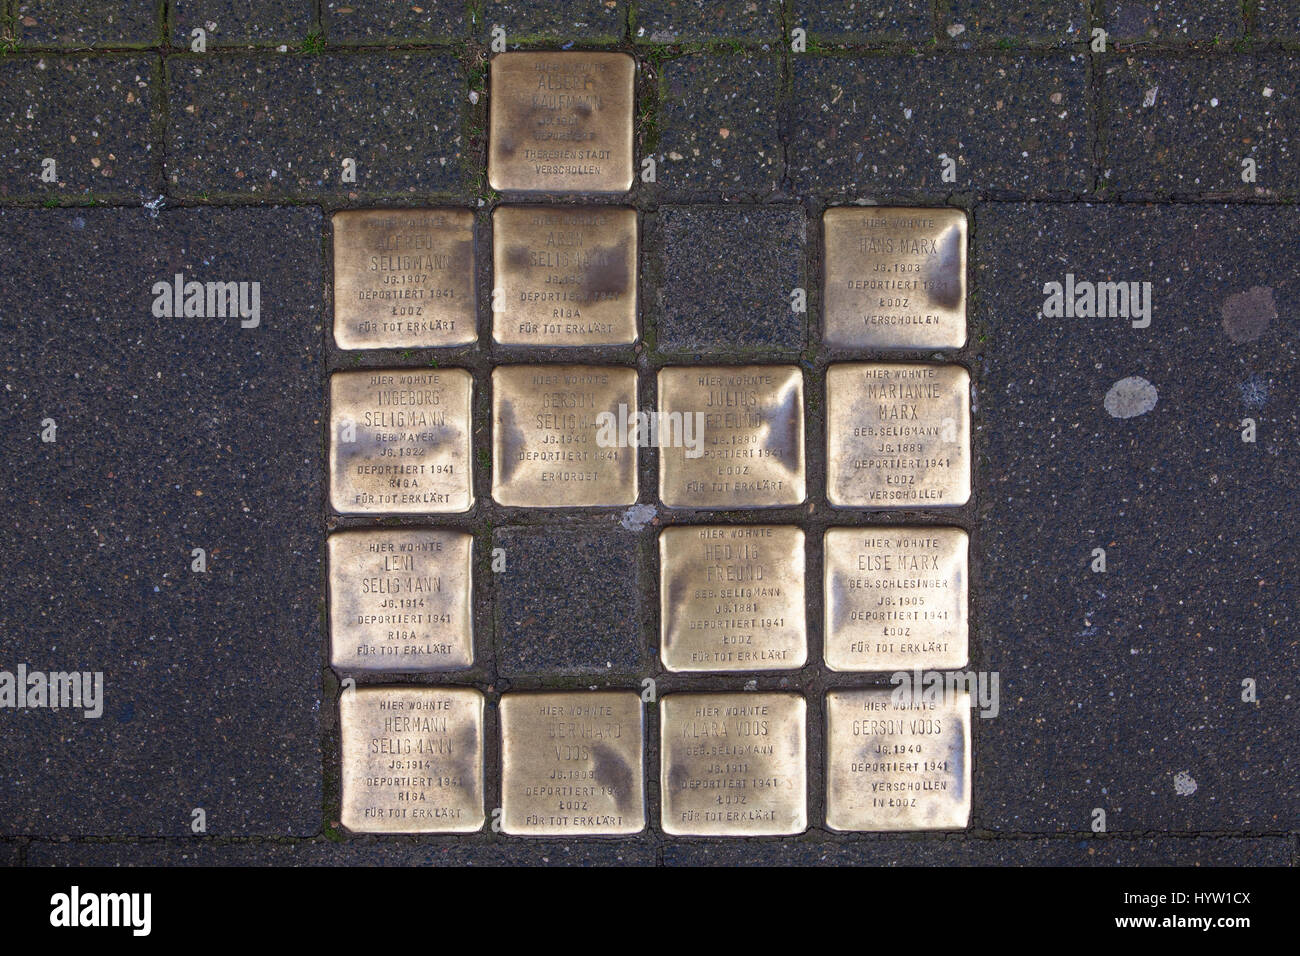 Alemania, Colonia, Stolpersteine (piedras de tropiezo) por el artista Gunter Demnig. Las piedras de conmemoración de las Víctimas del Nacionalsocialismo (Nazi). Foto de stock